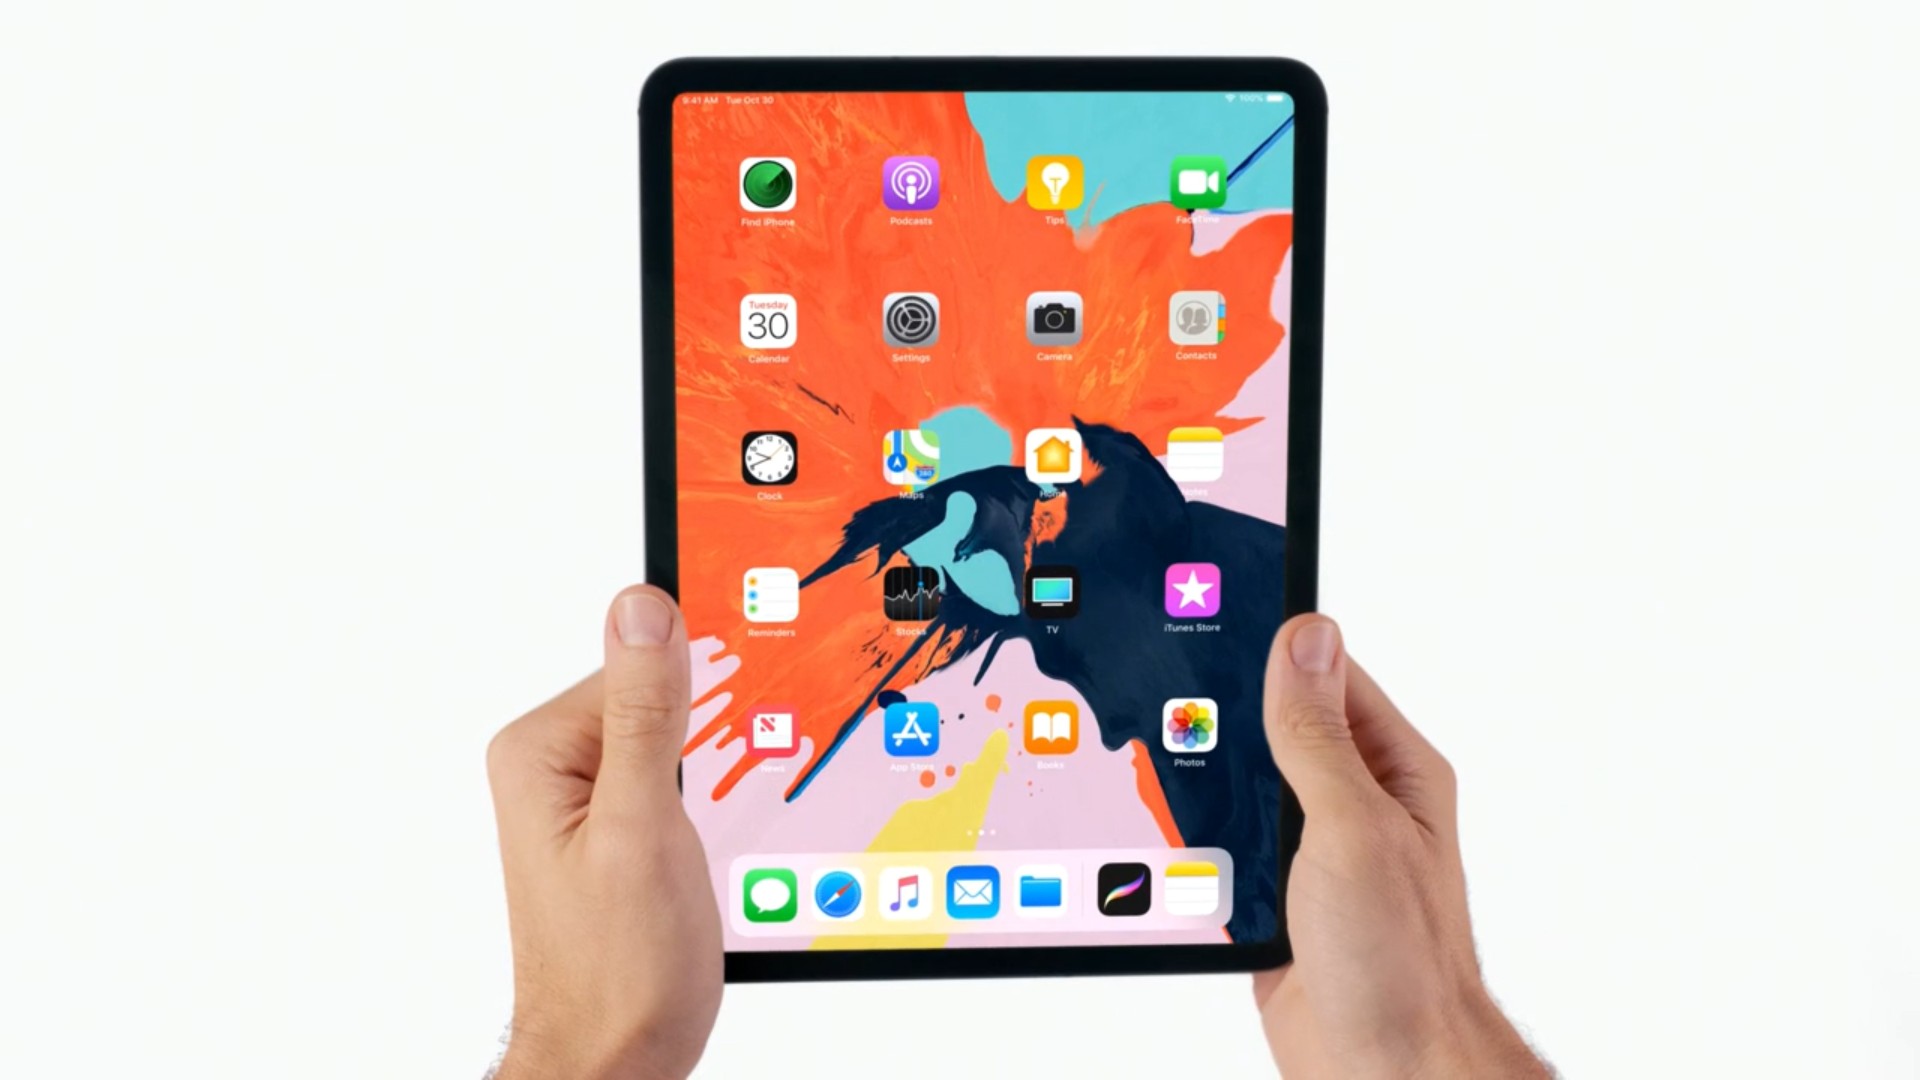 U novoj generaciji, iPad Pro ima ekran koji ide od ruba do ruba, sa zaobljenim rubovima poput novijih iPhonea. Budući da se radi o LCD ekranu, tehnologija koja omogućuje takav ekran je jednaka kao i u iPhoneu XR, Liquid Retina. Novi manji iPad Pro model slične je veličine kao i prethodnik, no s većim ekranom od 11 inča. Dakle, ekran zauzima veću površinu. Veći model ima jednakih 12,9 inča, no s manjim obrubima oko ekrana, stoga je fizički manje veličine. Oba modela su također jedan milimetar tanja od prethodnika, s 5,9 milimetara debljine.